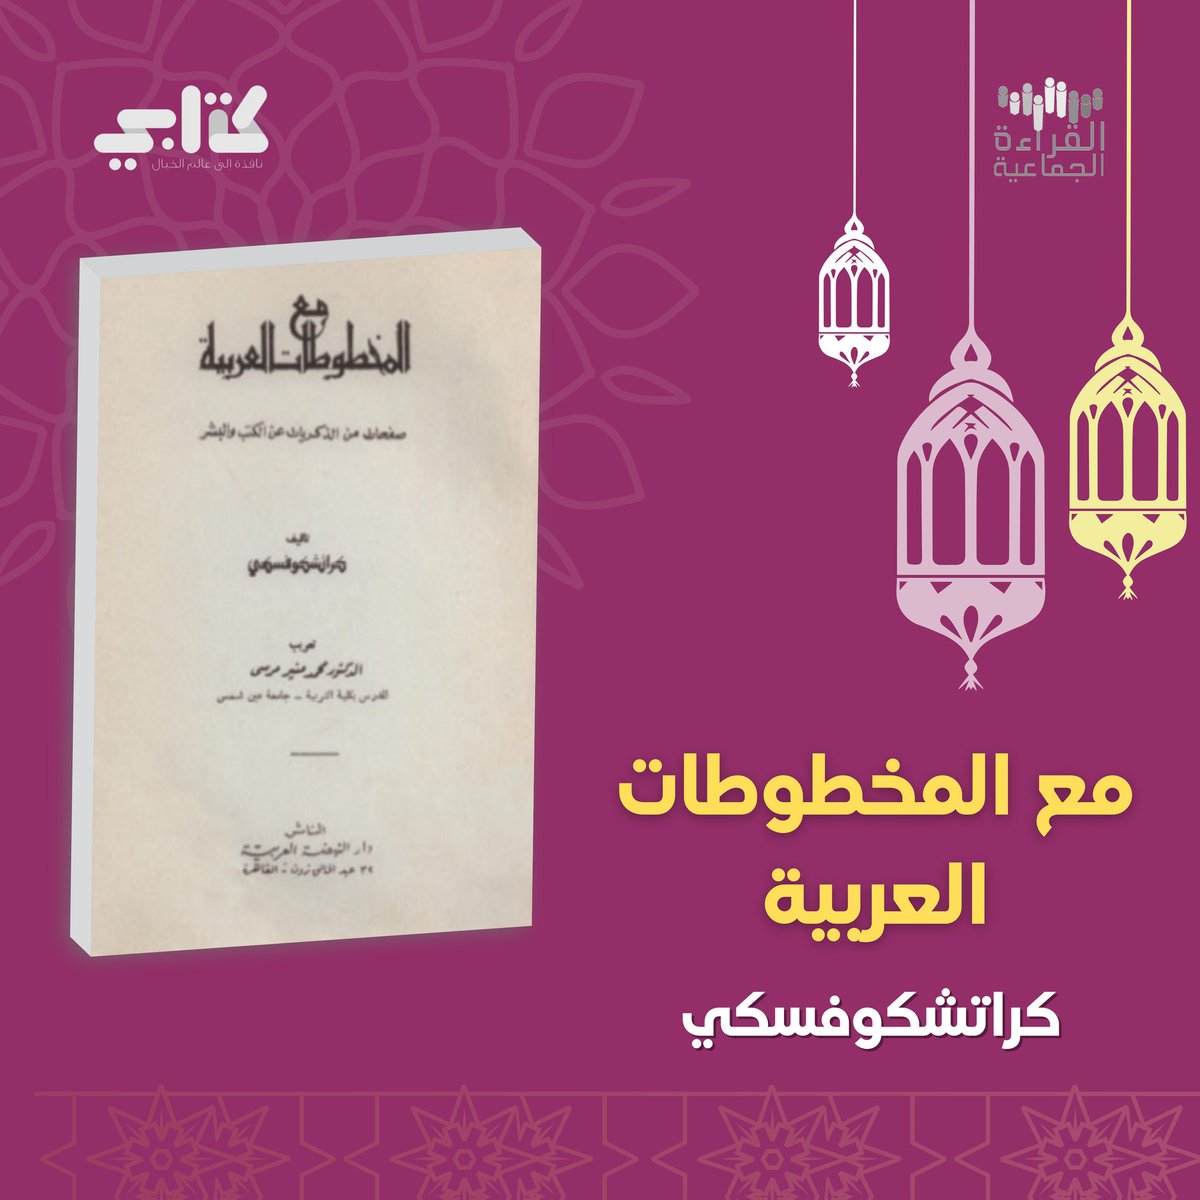 بنهاية رحلتنا مع كتاب «مع المخطوطات العربية» شاركونا فوائدكم من الكتاب يا أصدقاء #القراءة_الجماعية